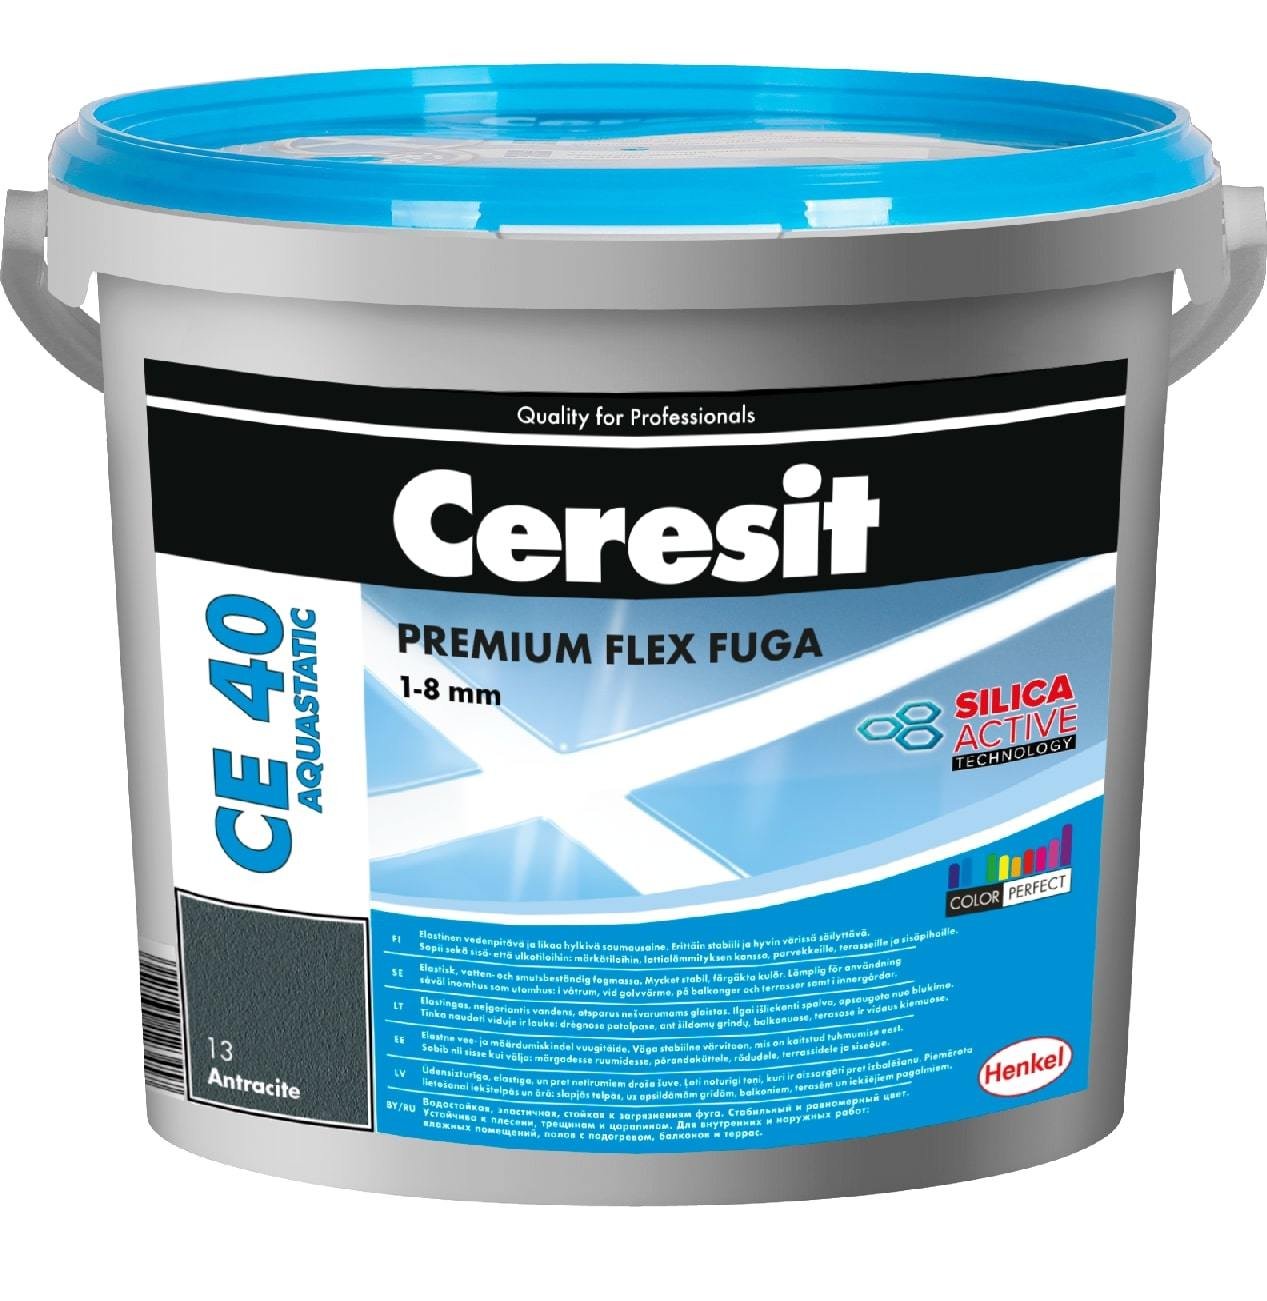 Elastingas plytelių siūlių glaistas CERESIT CE40 AQUASTATIC 88, tamsiai mėlynos sp., 2 kg